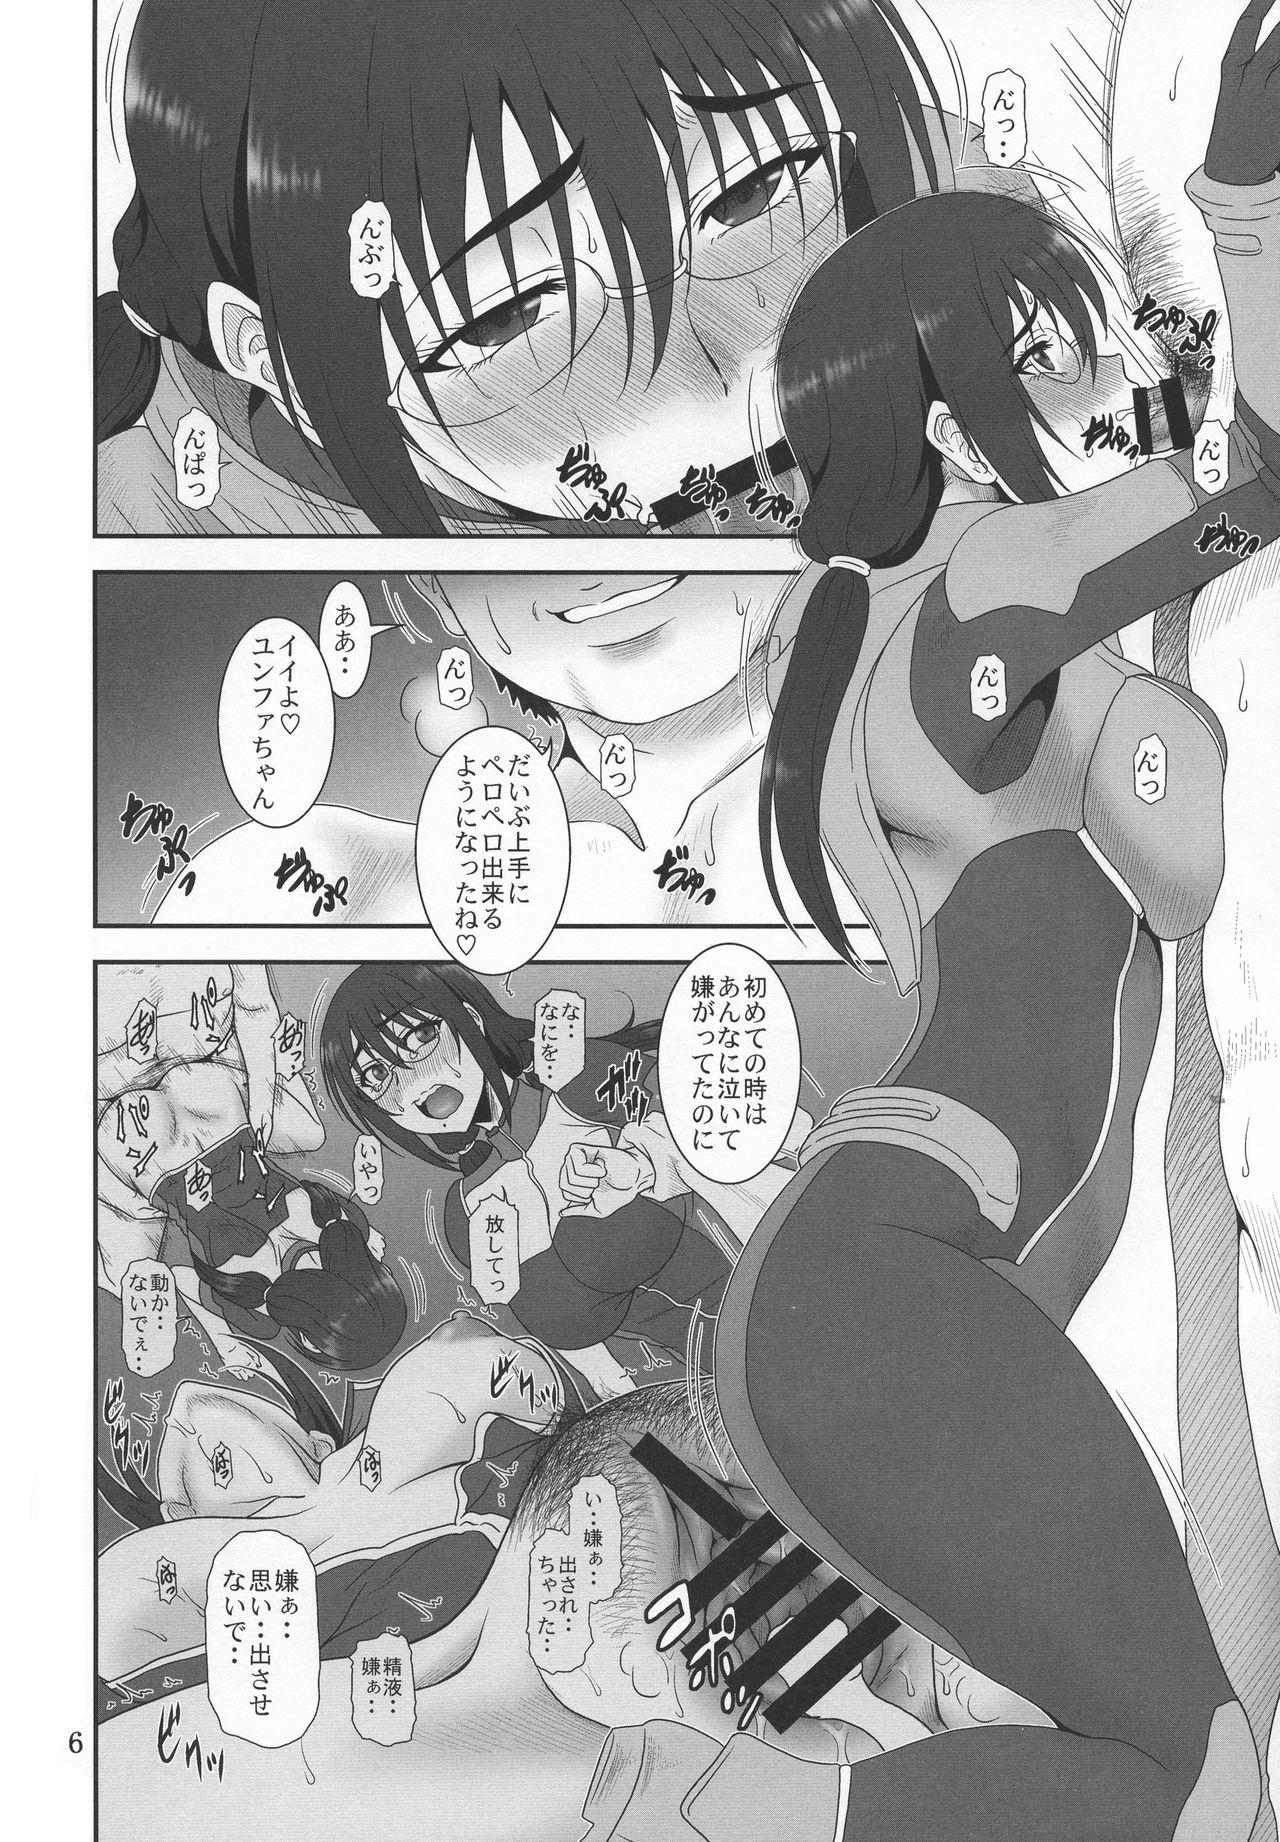 Ngentot Kyuukyou no Wakusei - Planet of plight - Kanata no astra Young Tits - Page 5